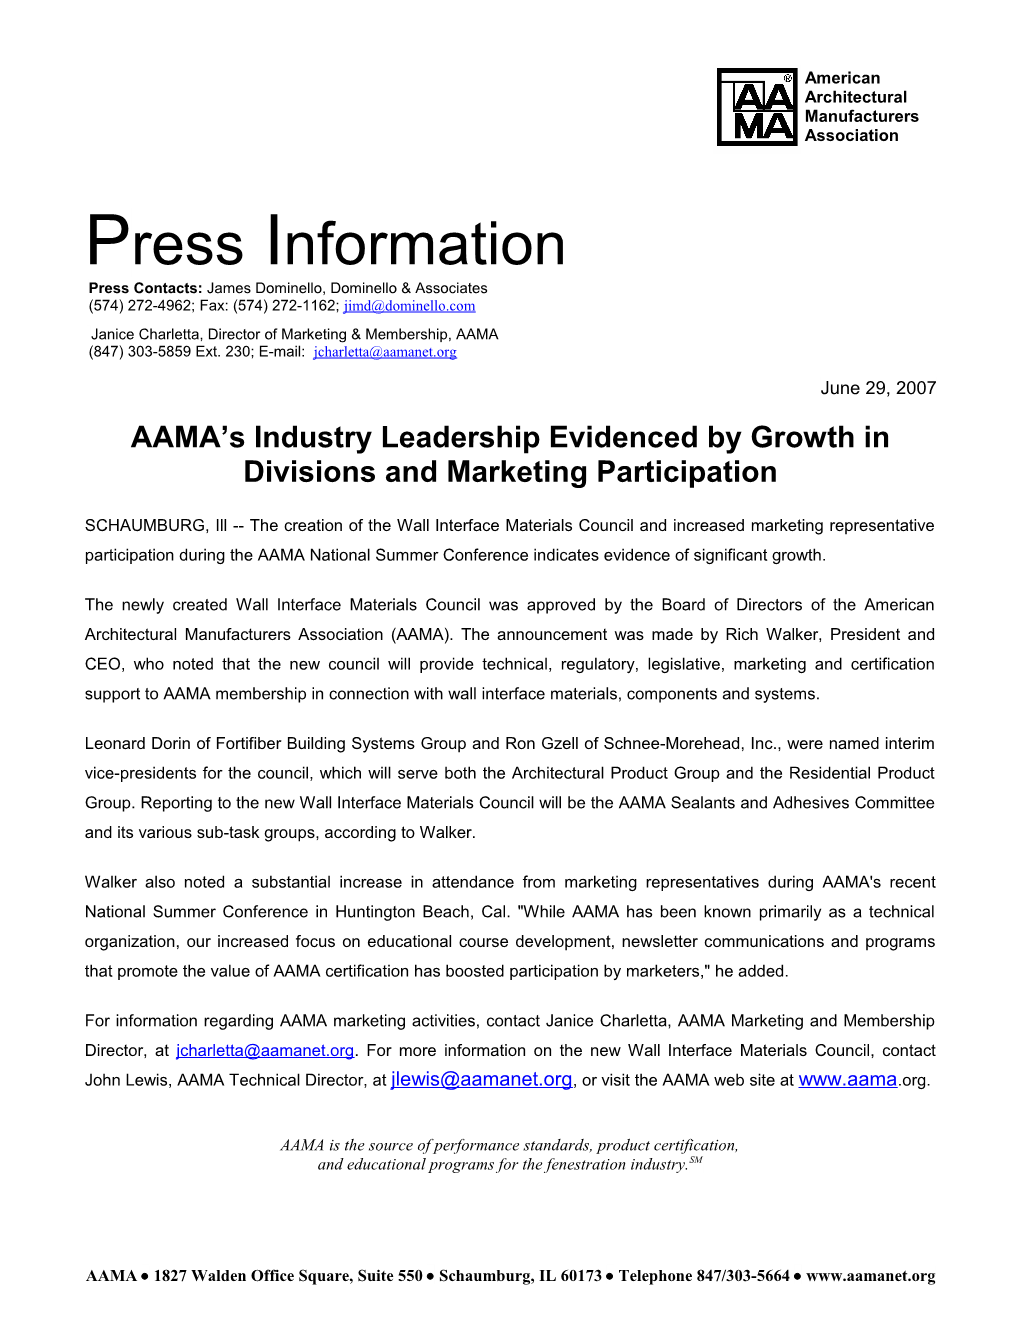 Press Contacts: James Dominello, Dominello & Associates